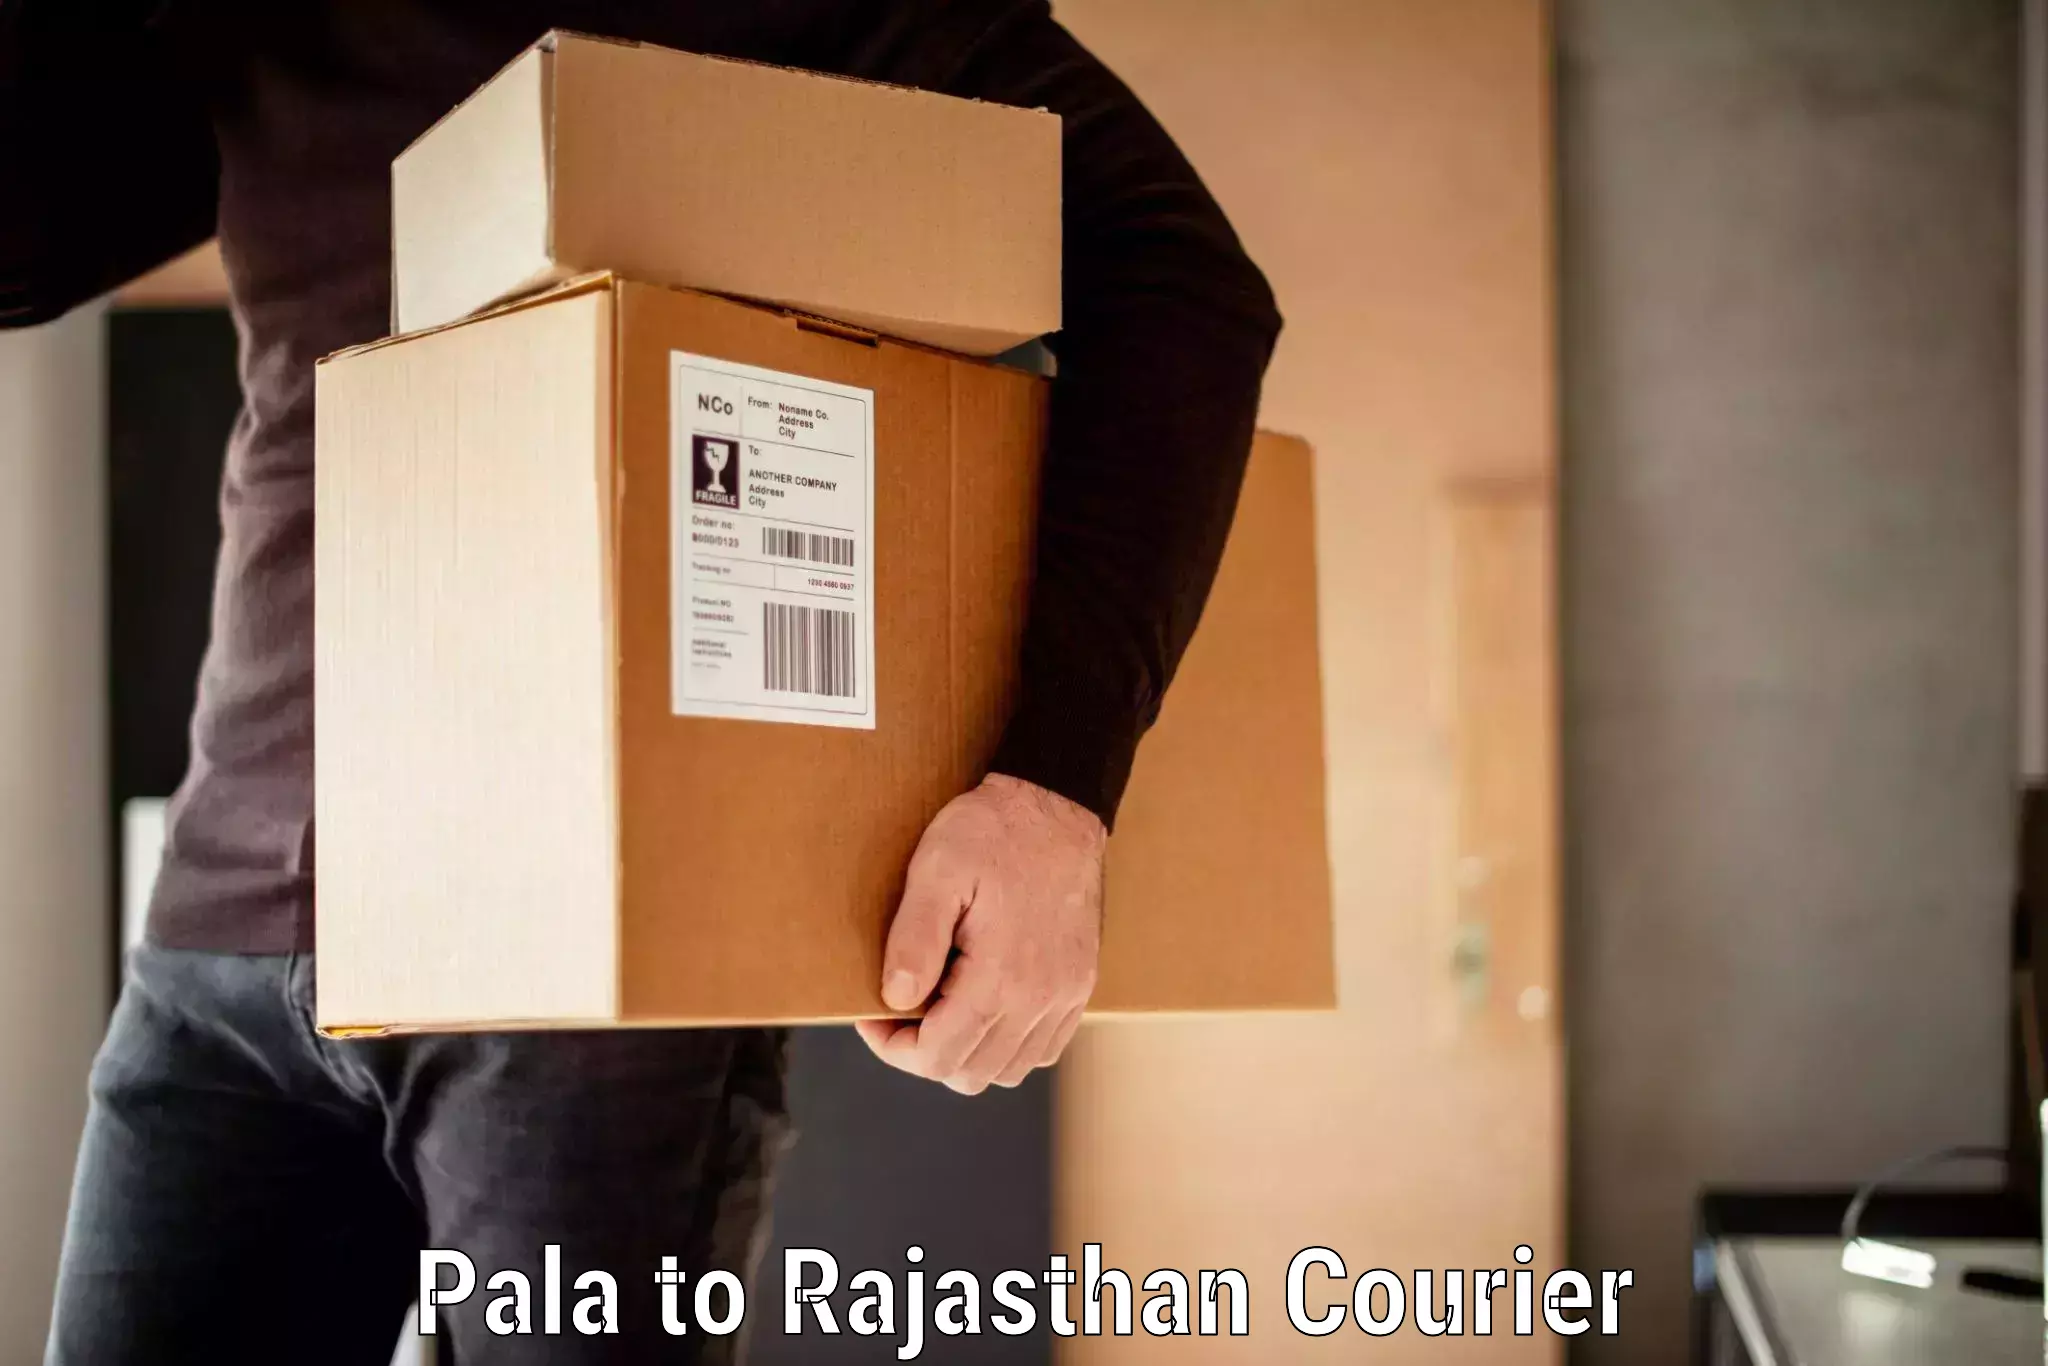 Baggage shipping experts Pala to Abu Road